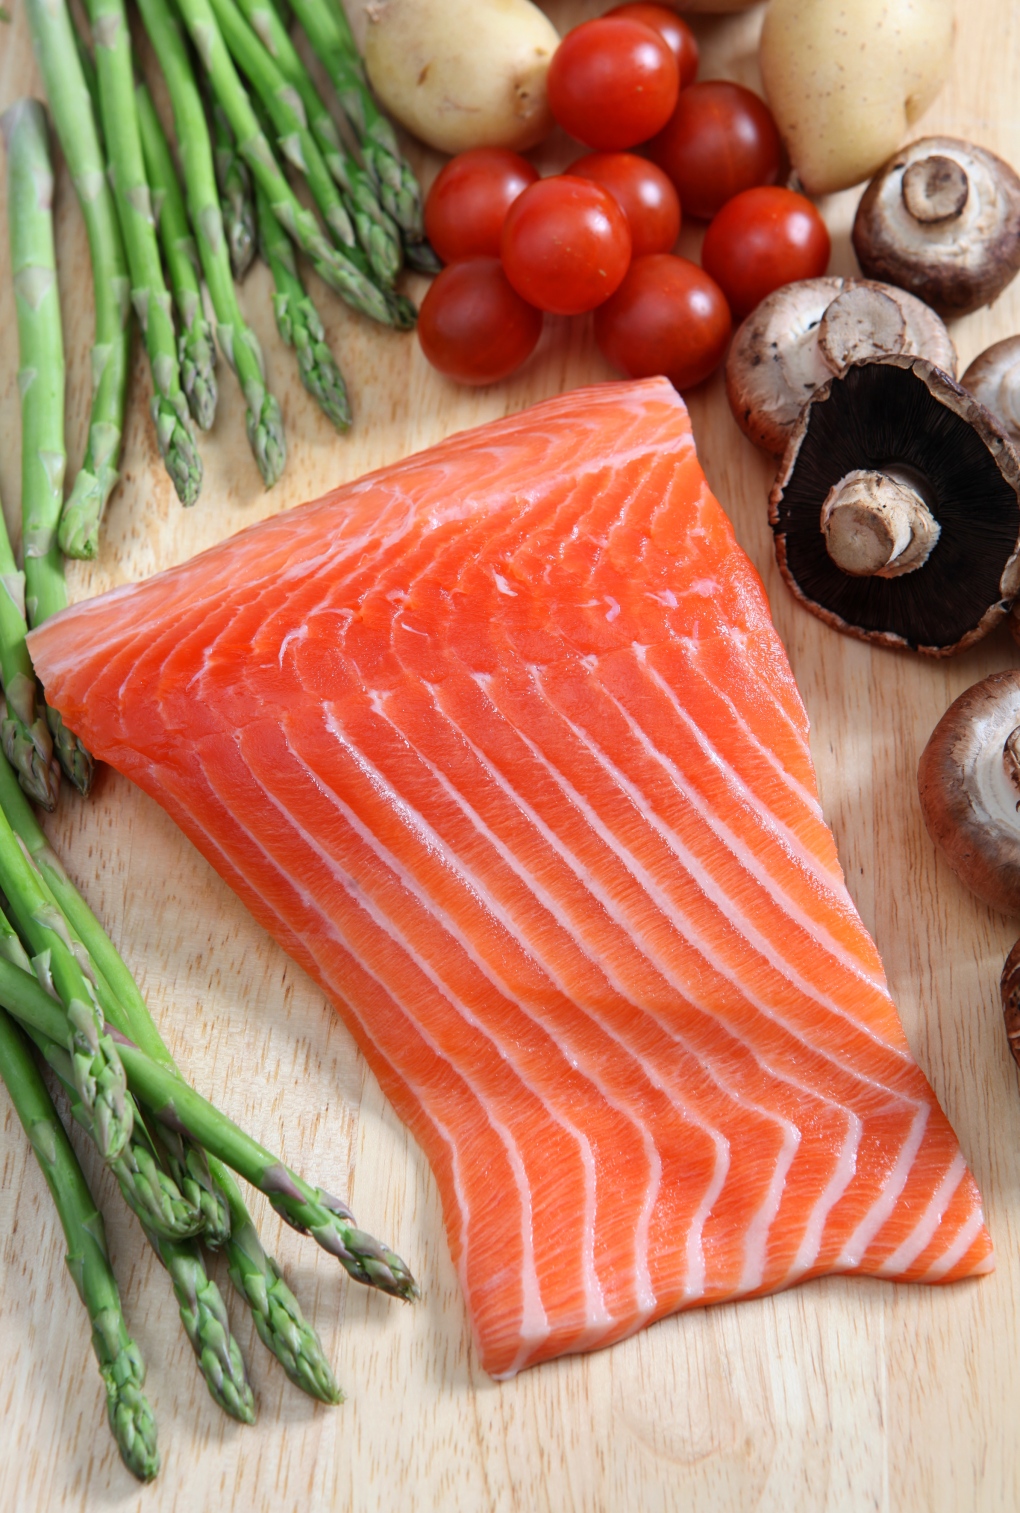 FDA warns against high-mercury seafood